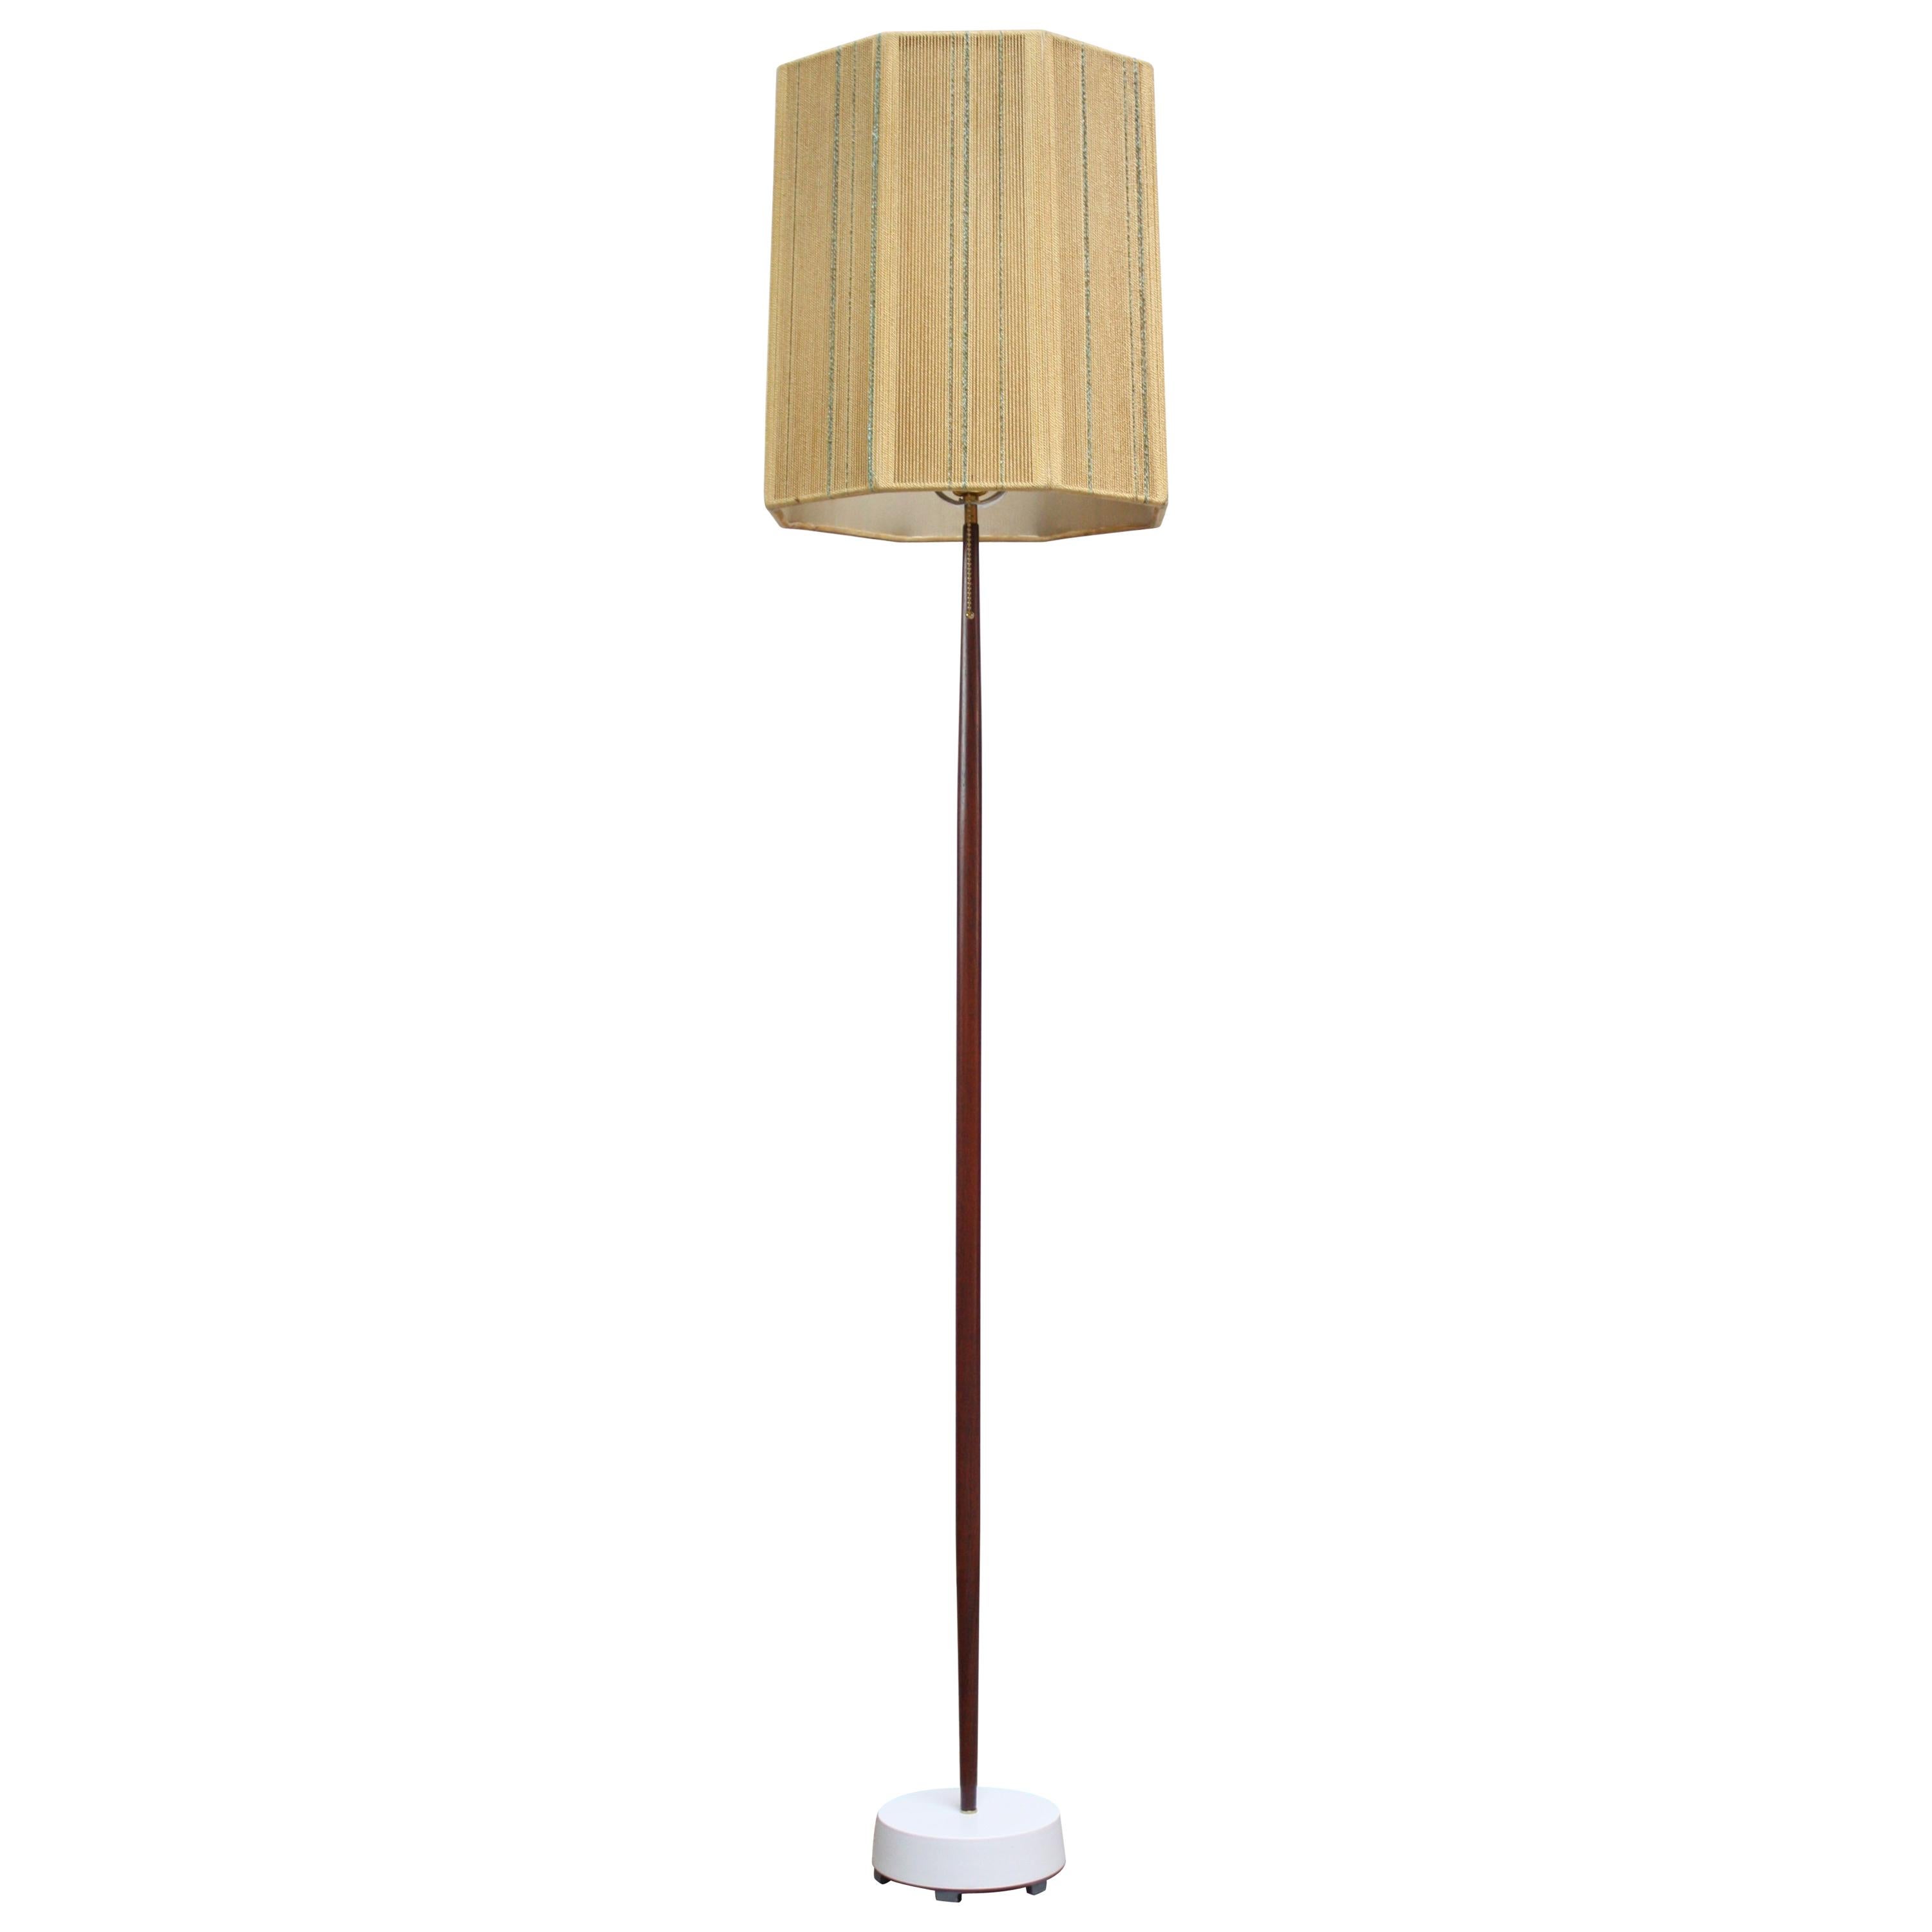 Sculpted Scandinavian Modern Teak Floor Lamp with Octagonal Rope Shade